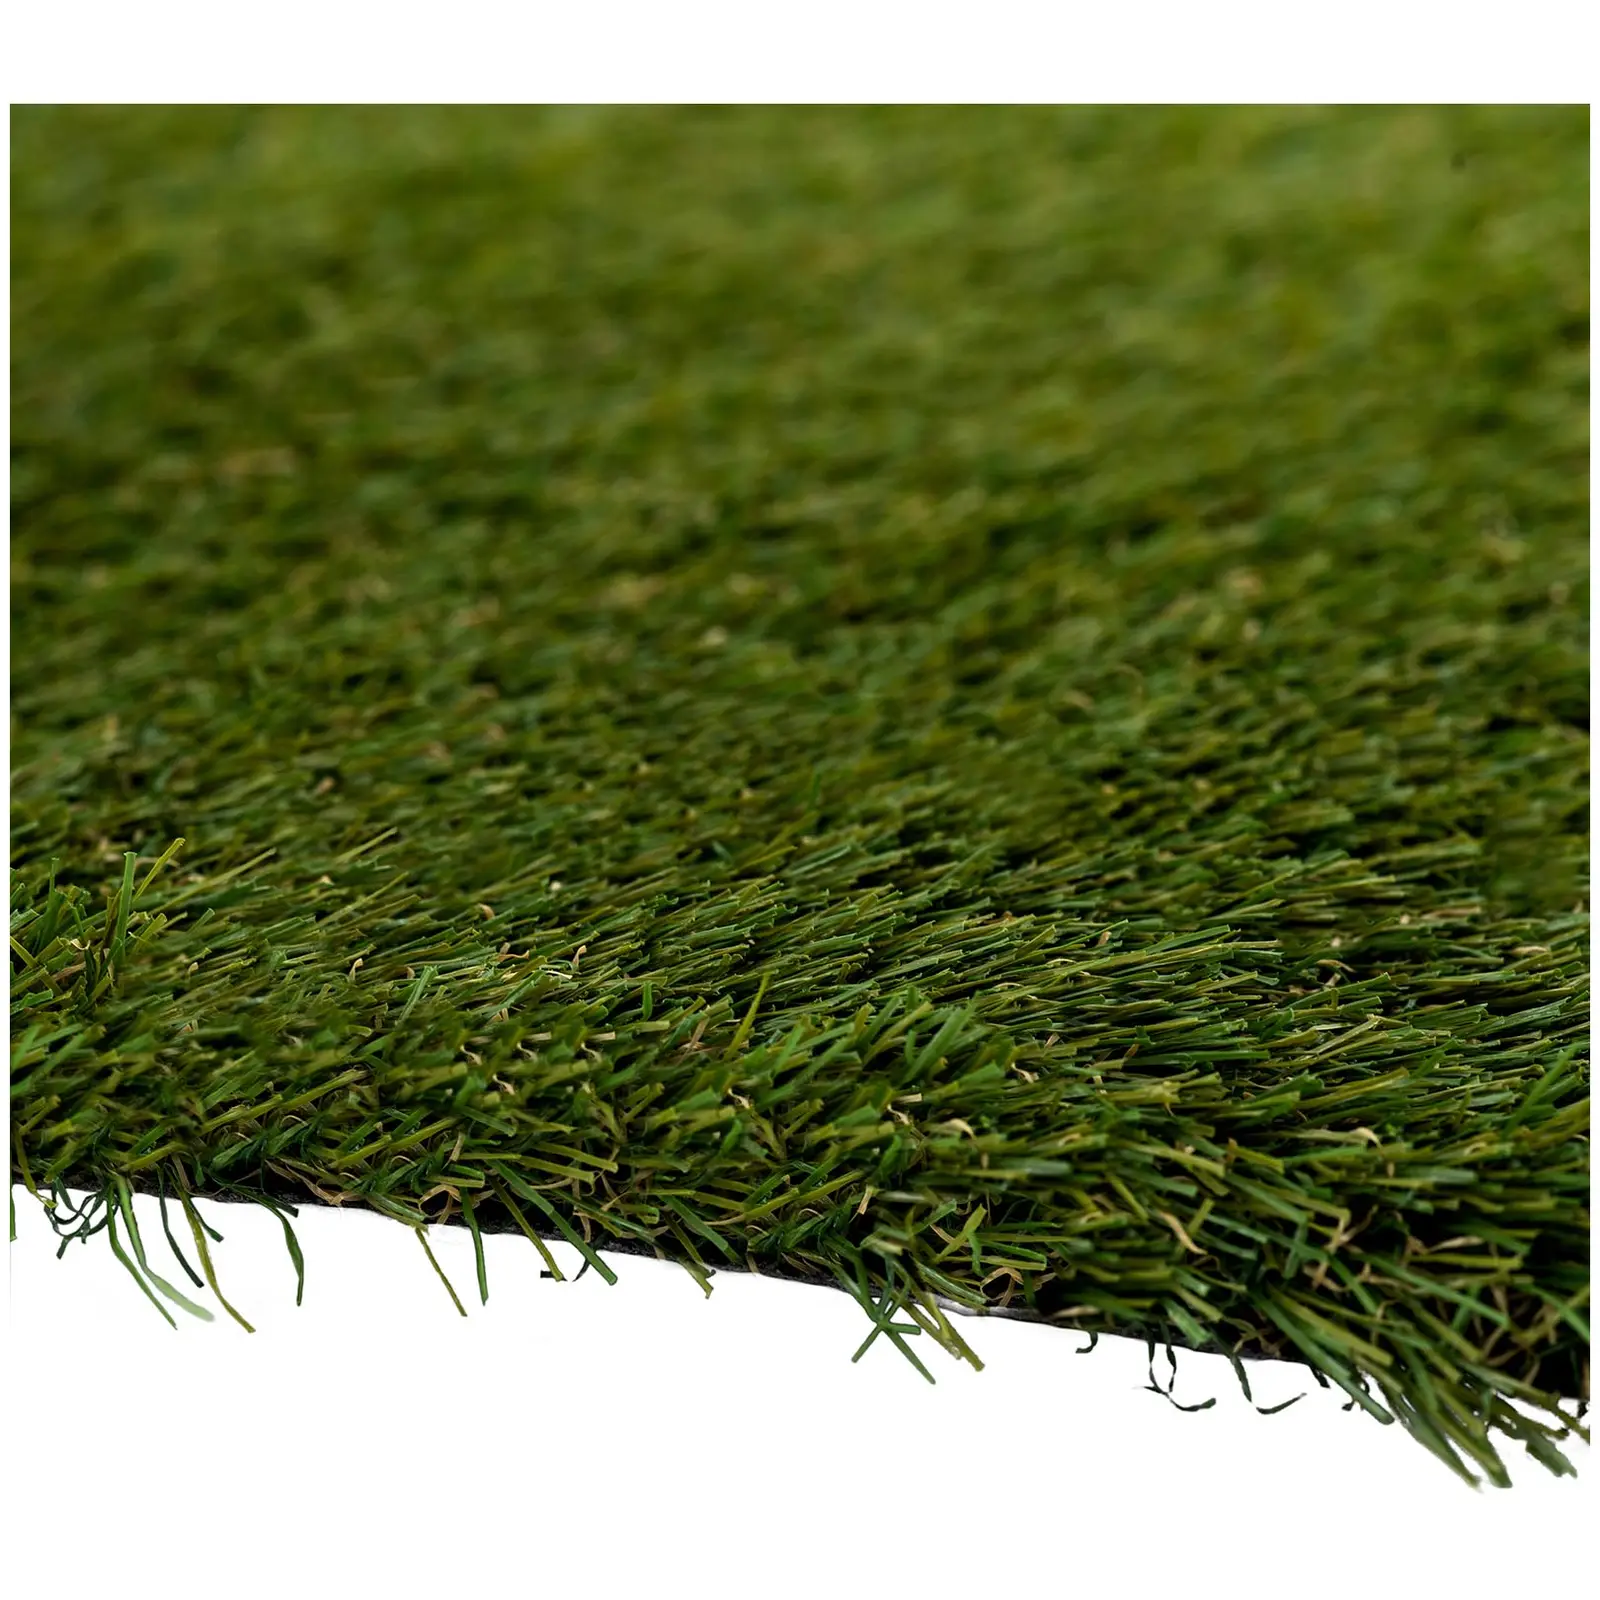 Umělý trávník - 507 x 200 cm - výška: 30 mm - hustota stehů: 20/10 cm - odolný proti UV záření